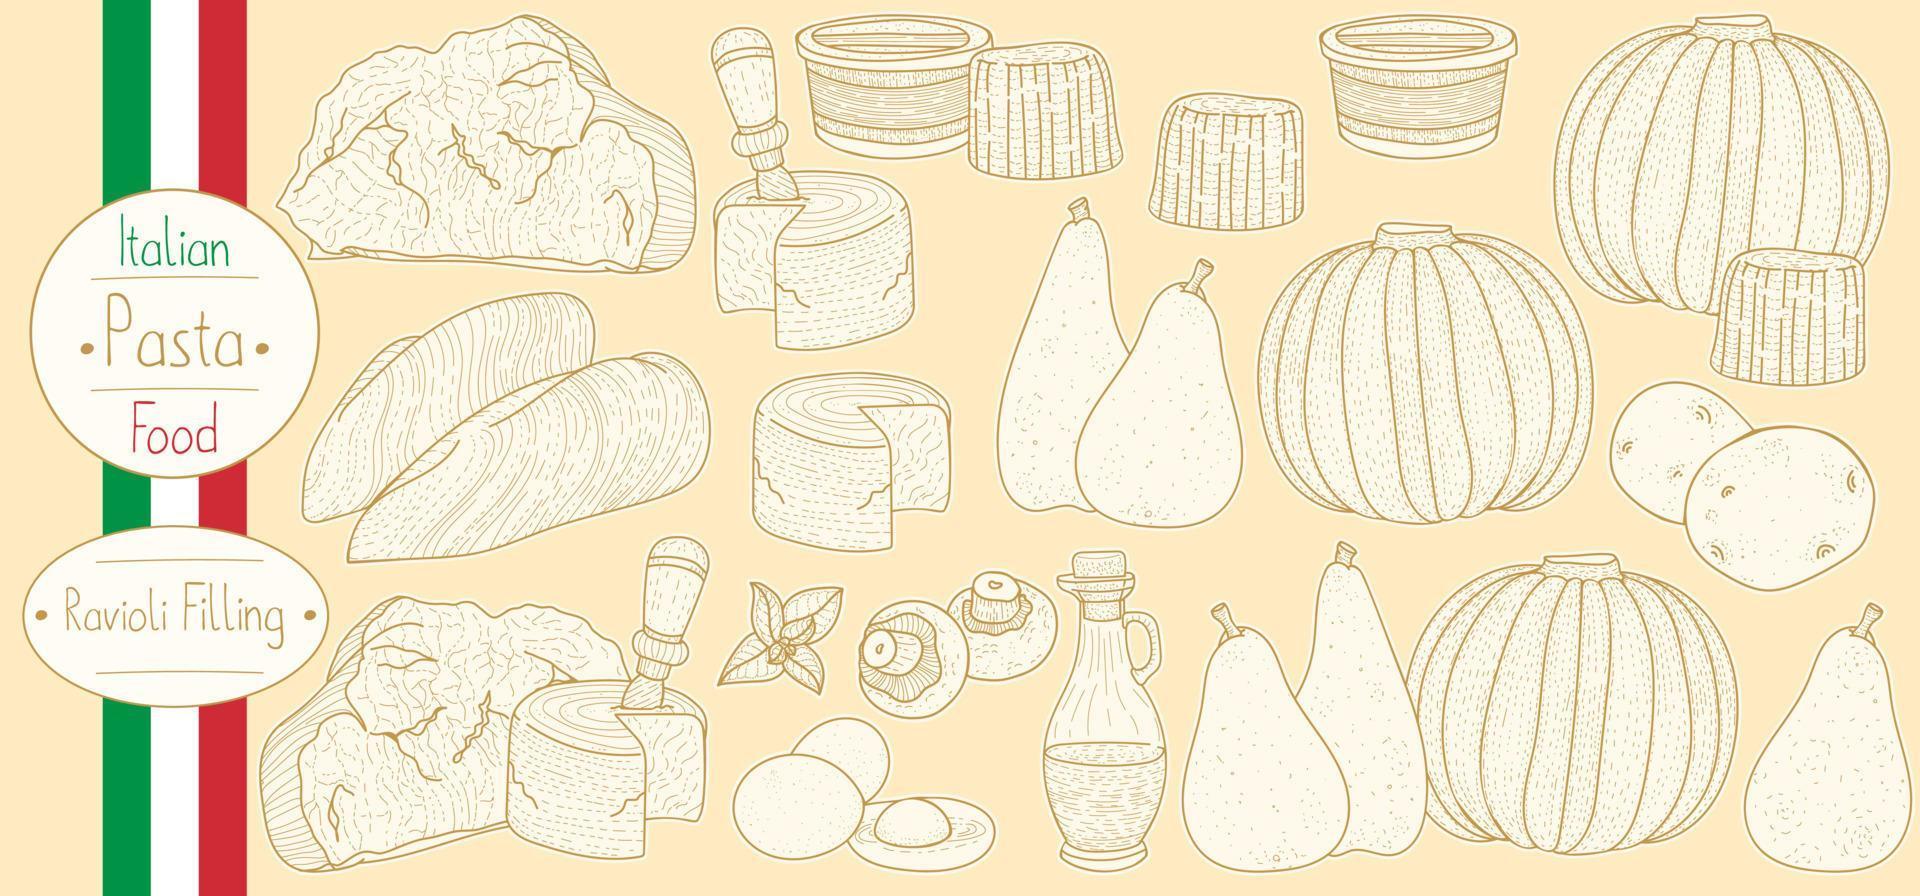 ingrédients principaux pour la garniture de pâtes farcies pour la cuisson des raviolis italiens, croquis d'illustration de style vintage vecteur